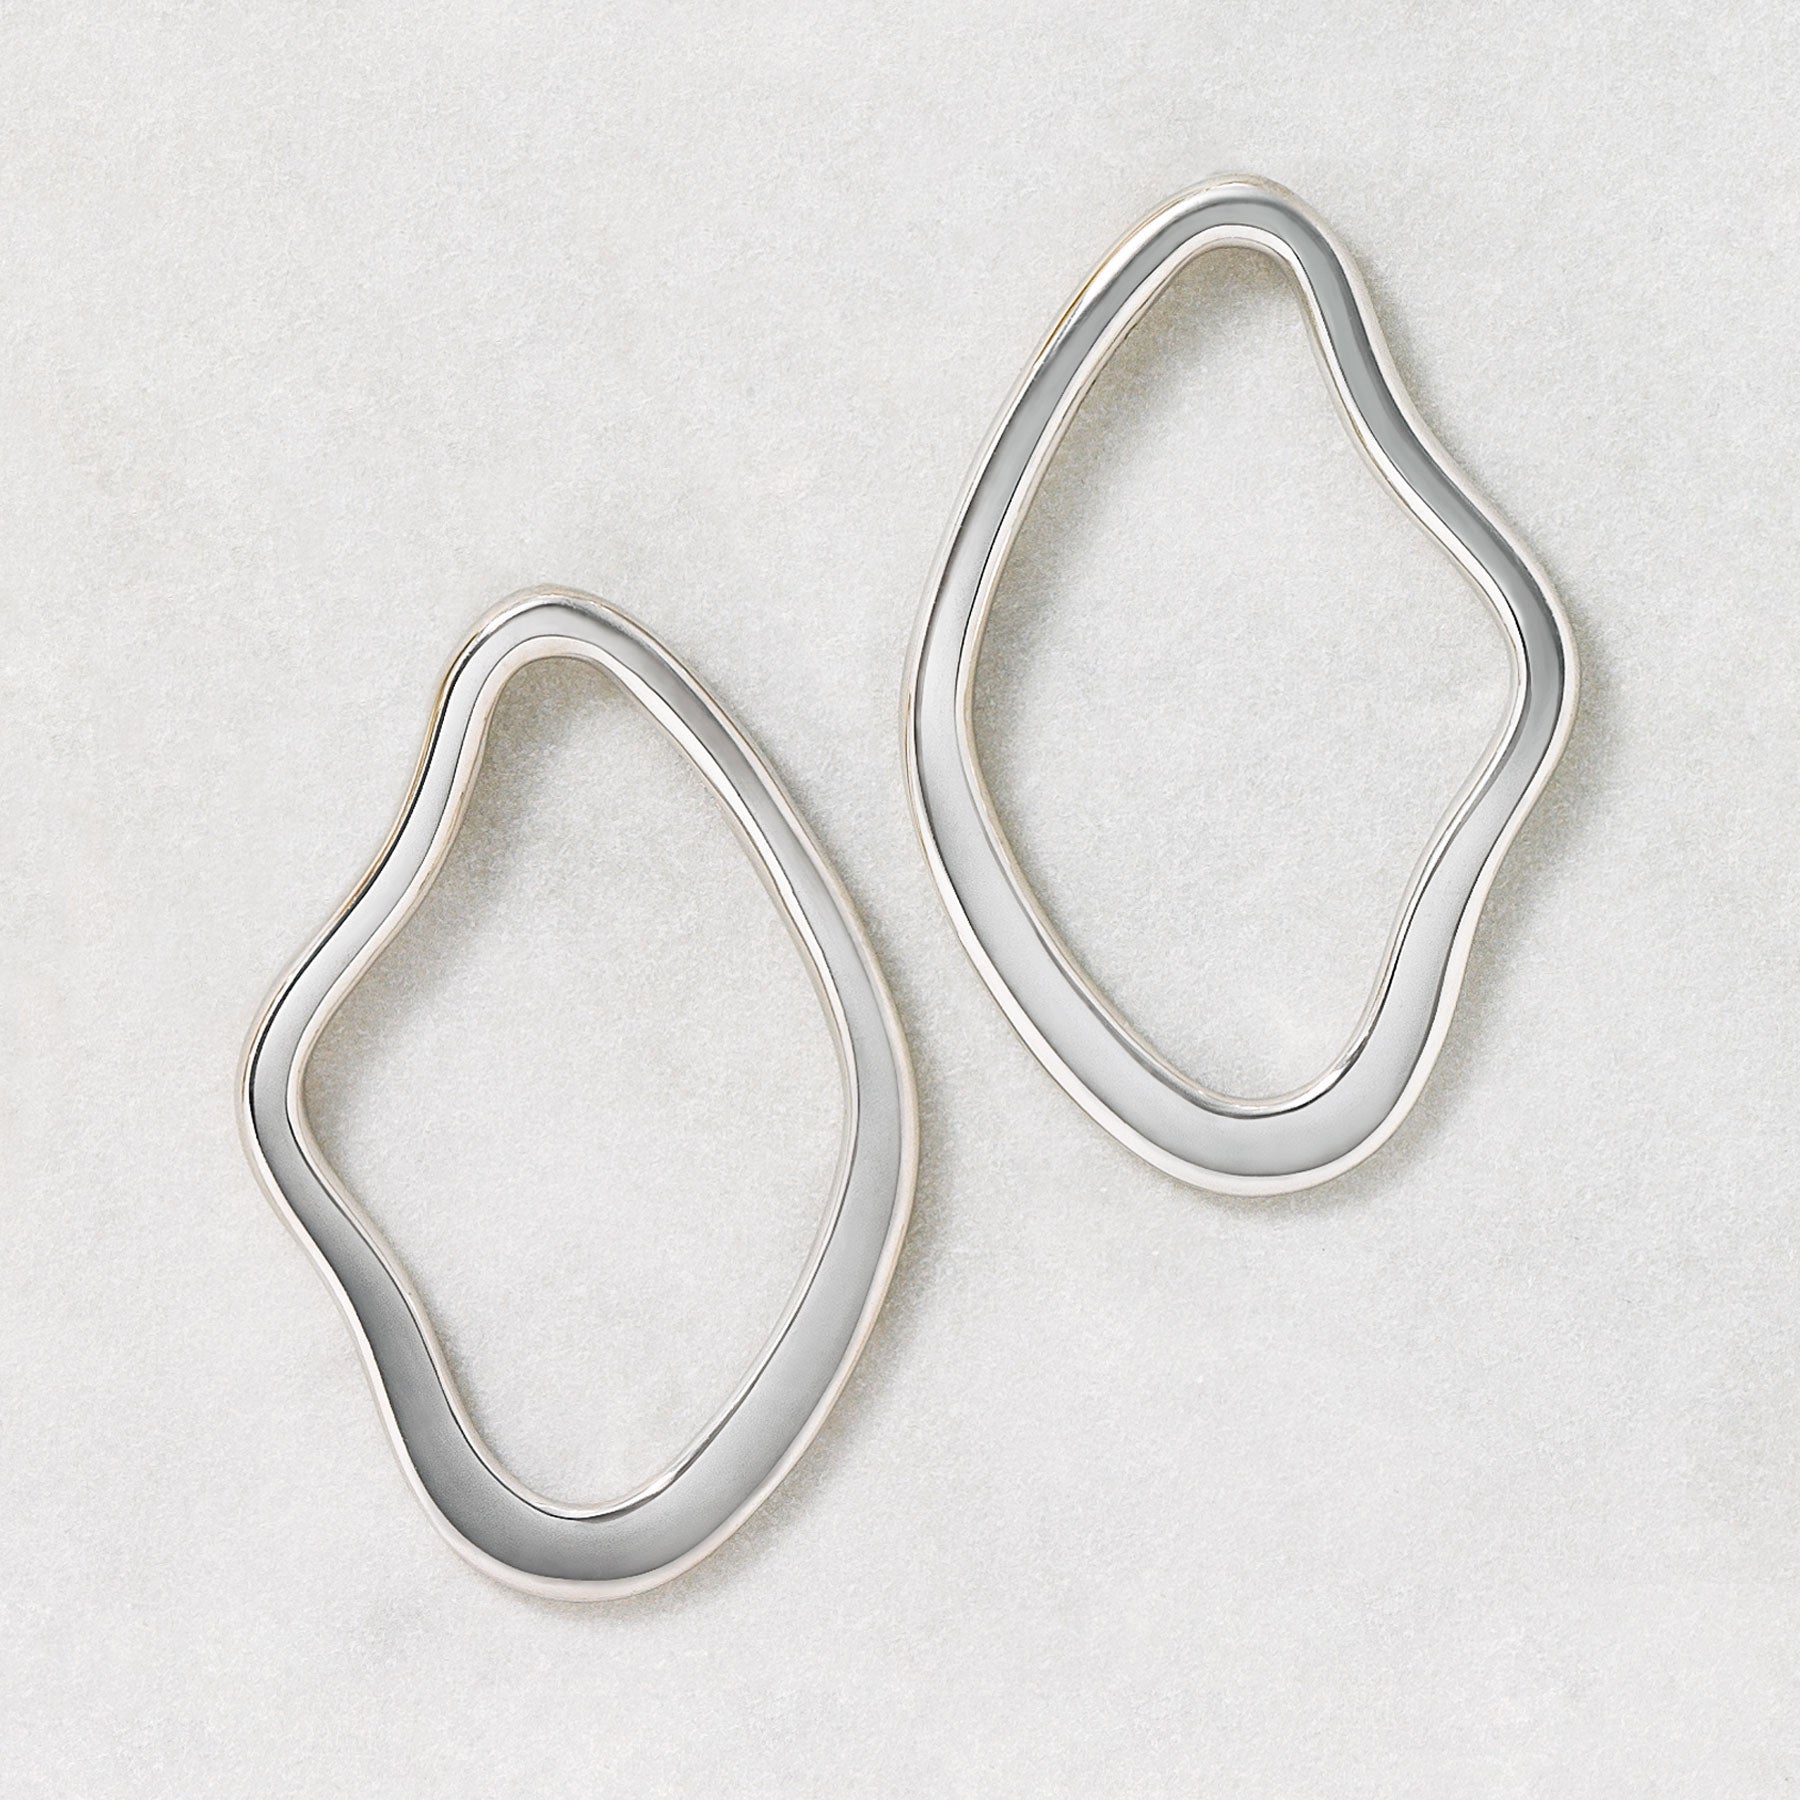 925 Sterling Silver Earrings "Wavy Hoop" - Product Image